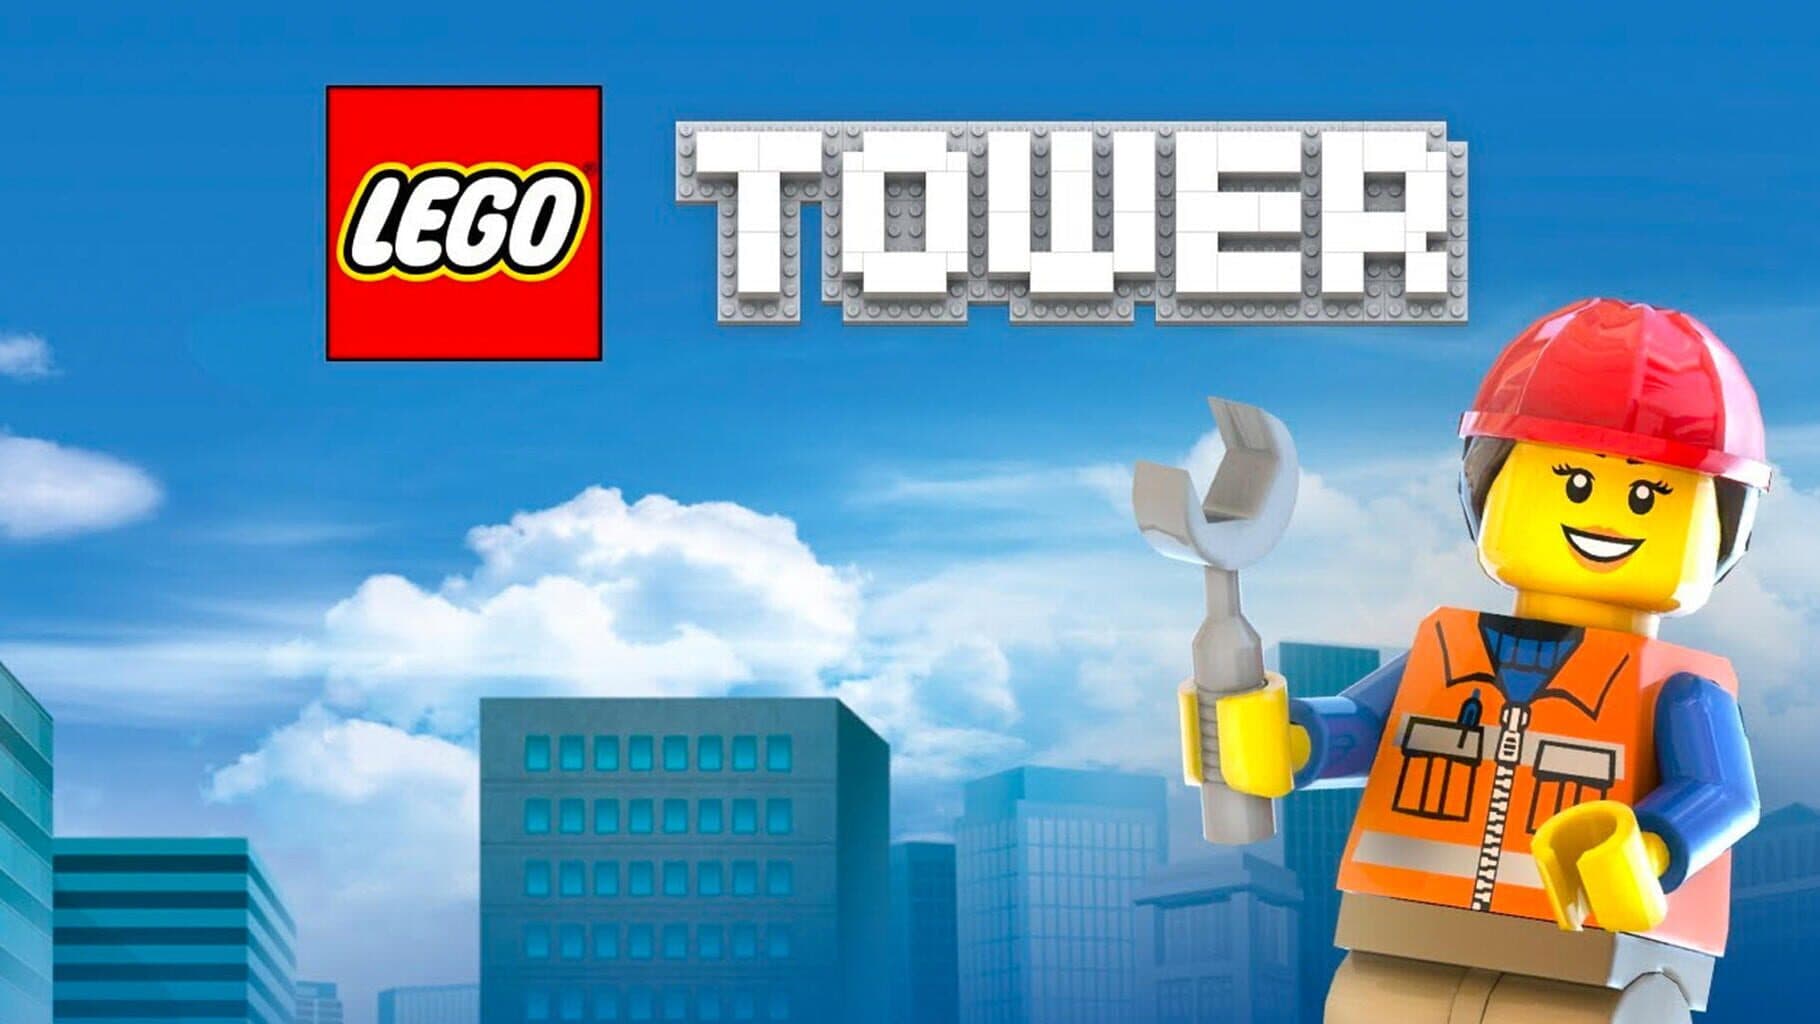 LEGO Tower Image